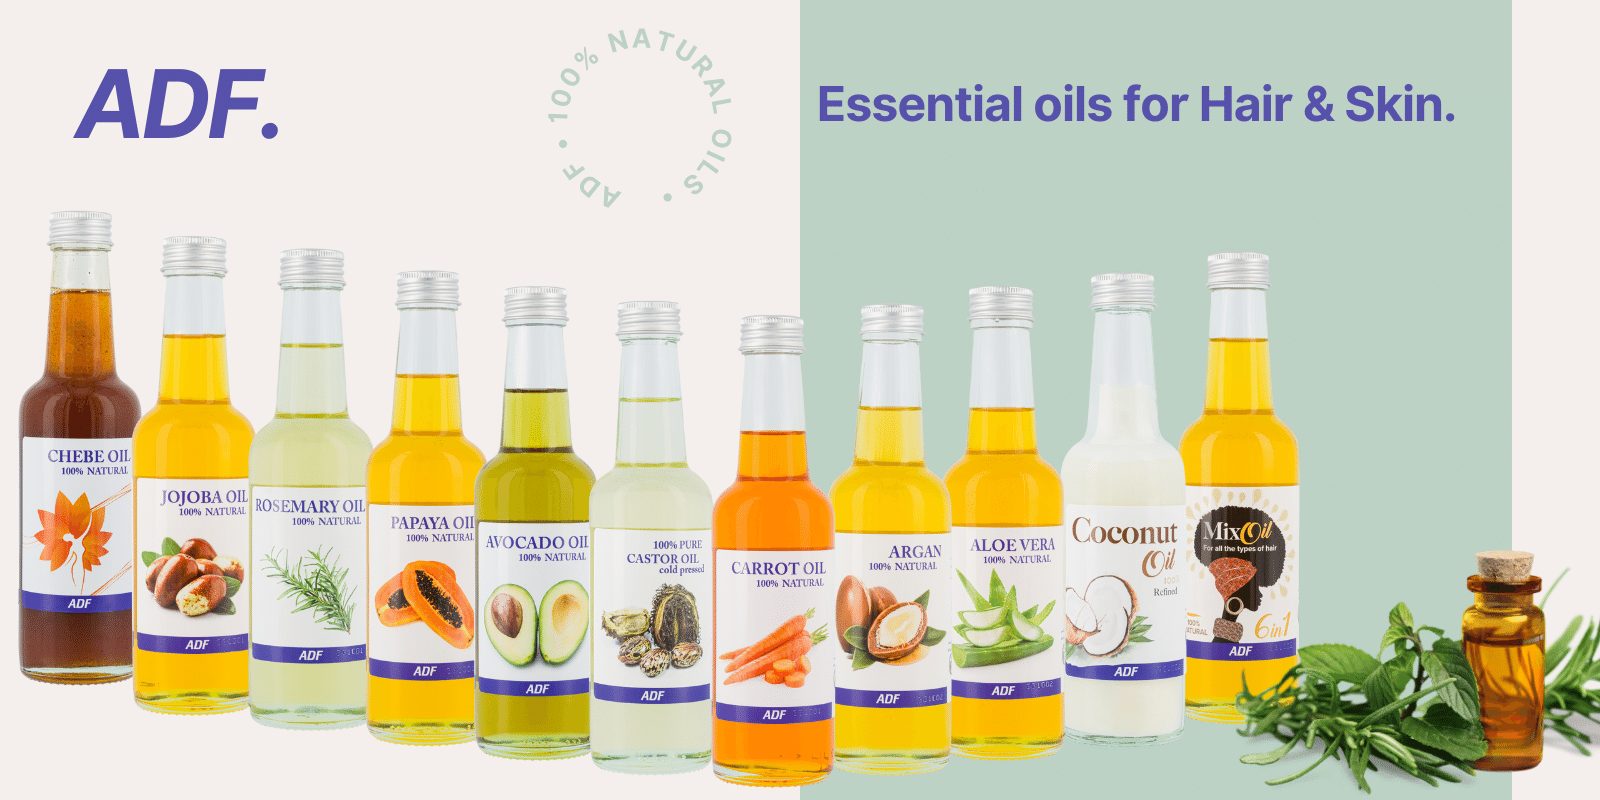 ADF Essential Oils